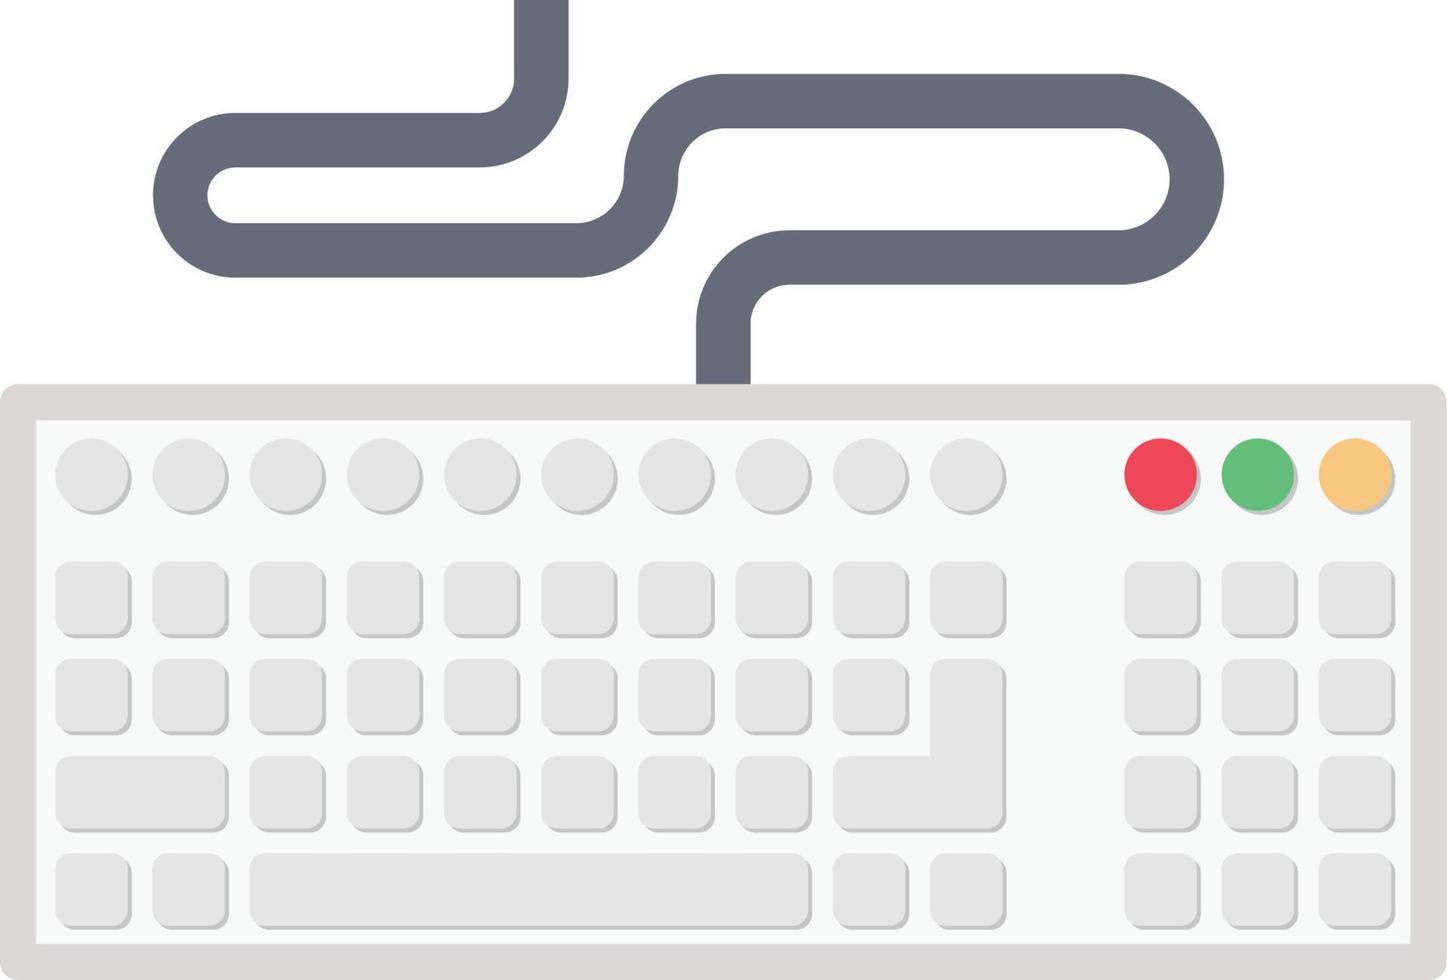 tastaturvektorillustration auf einem hintergrund. hochwertige symbole. vektorikonen für konzept und grafikdesign. vektor